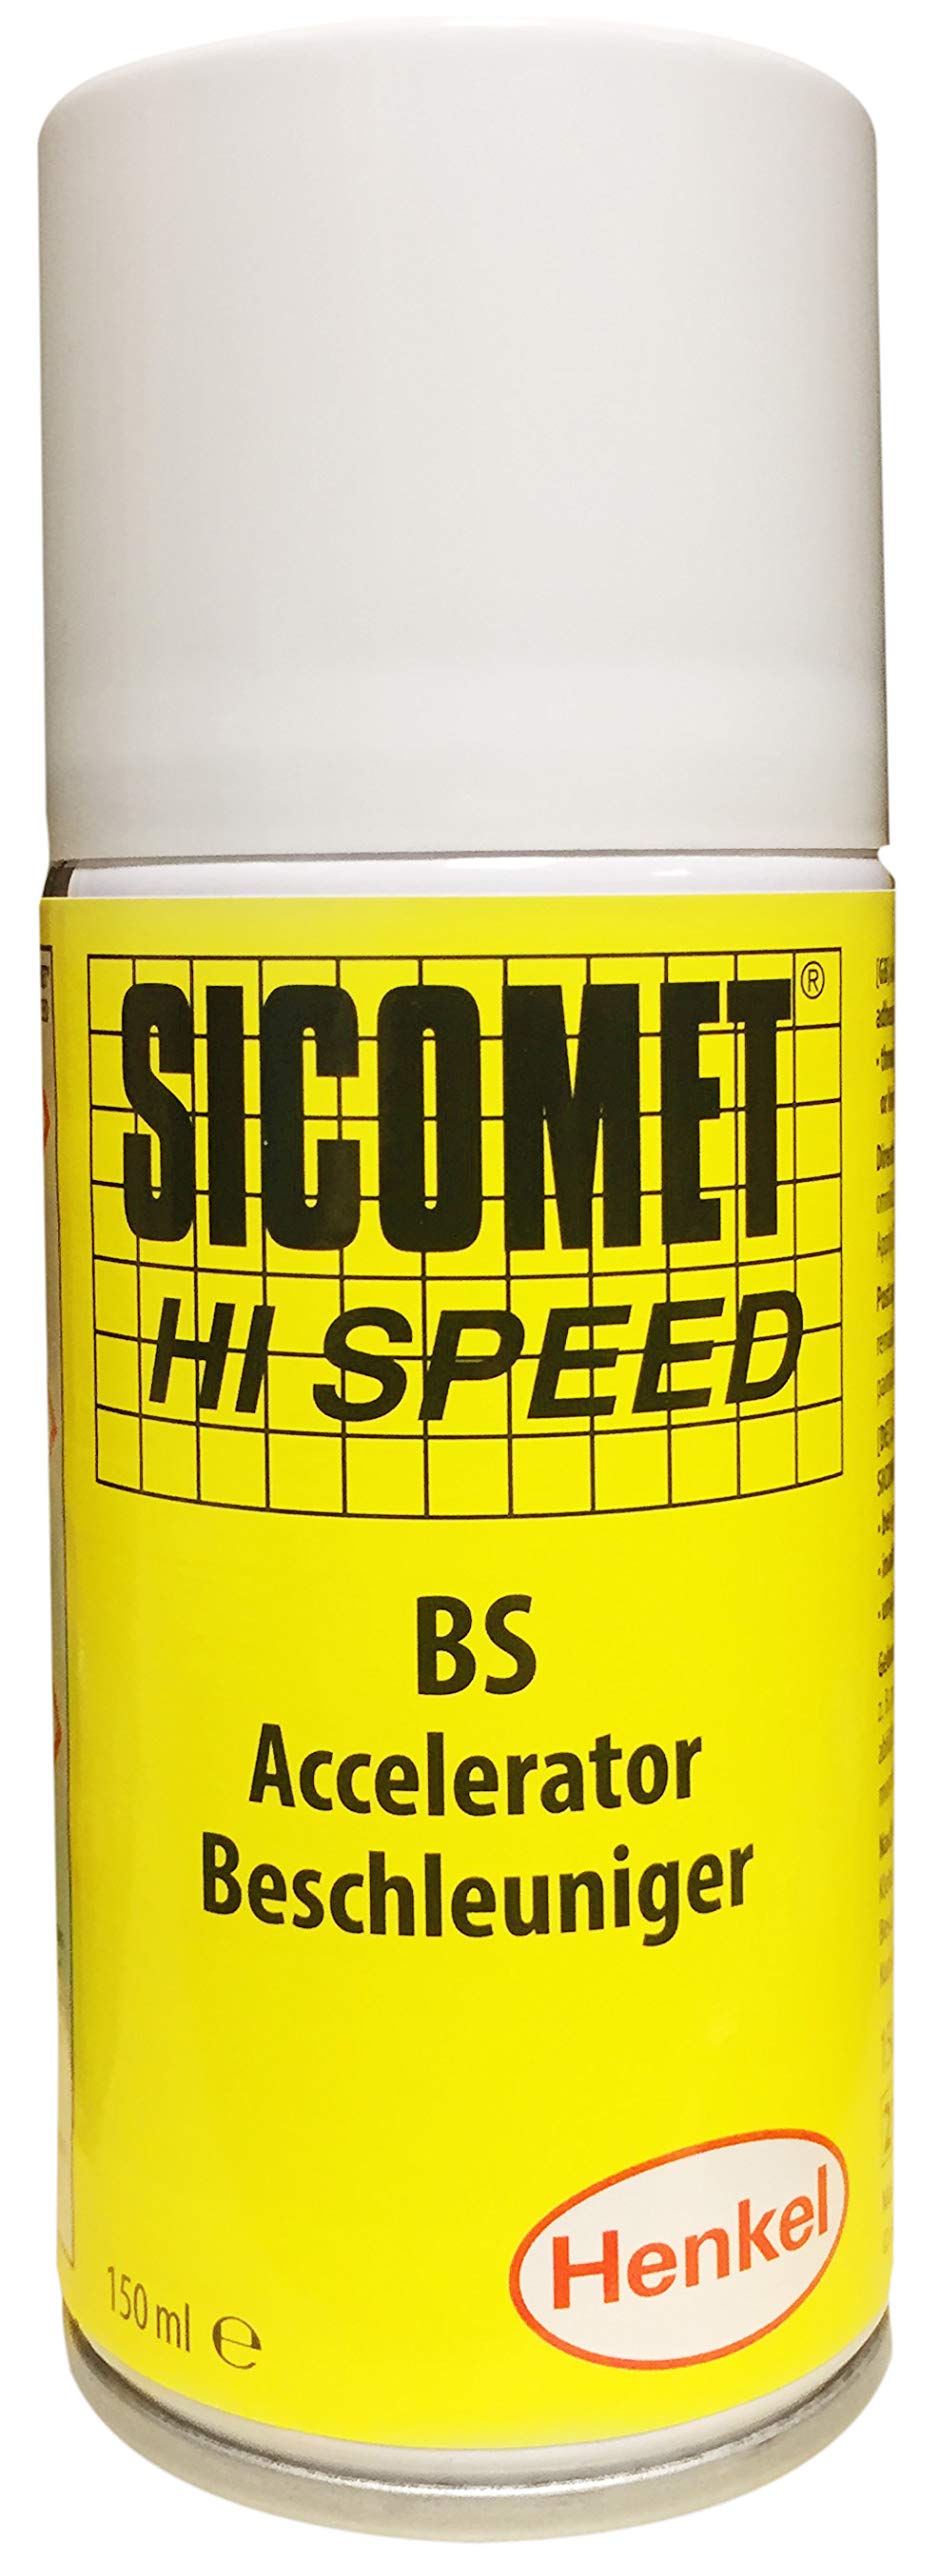 Sicomet HI-Speed Aktivator BS 150ml Spraydose IDH-Nr. 245559 von Sicomet